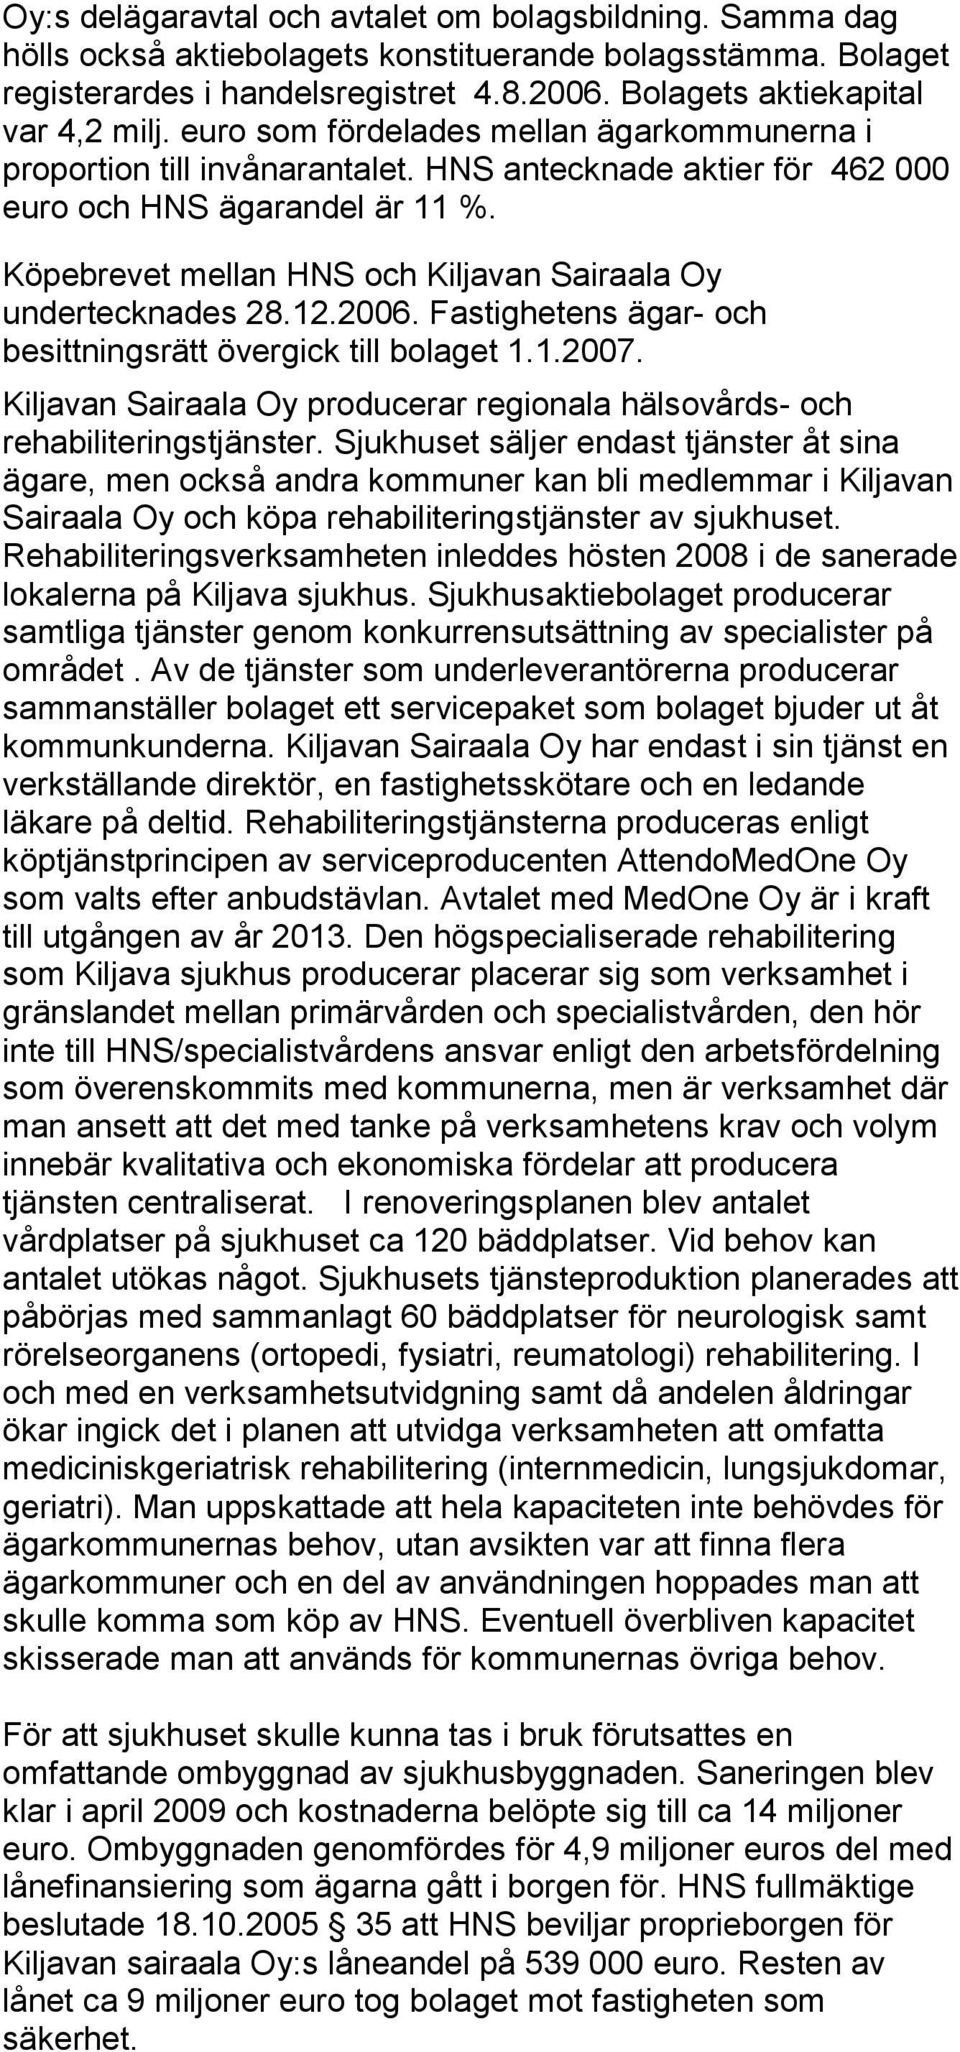 Köpebrevet mellan HNS och Kiljavan Sairaala Oy undertecknades 28.12.2006. Fastighetens ägar- och besittningsrätt övergick till bolaget 1.1.2007.